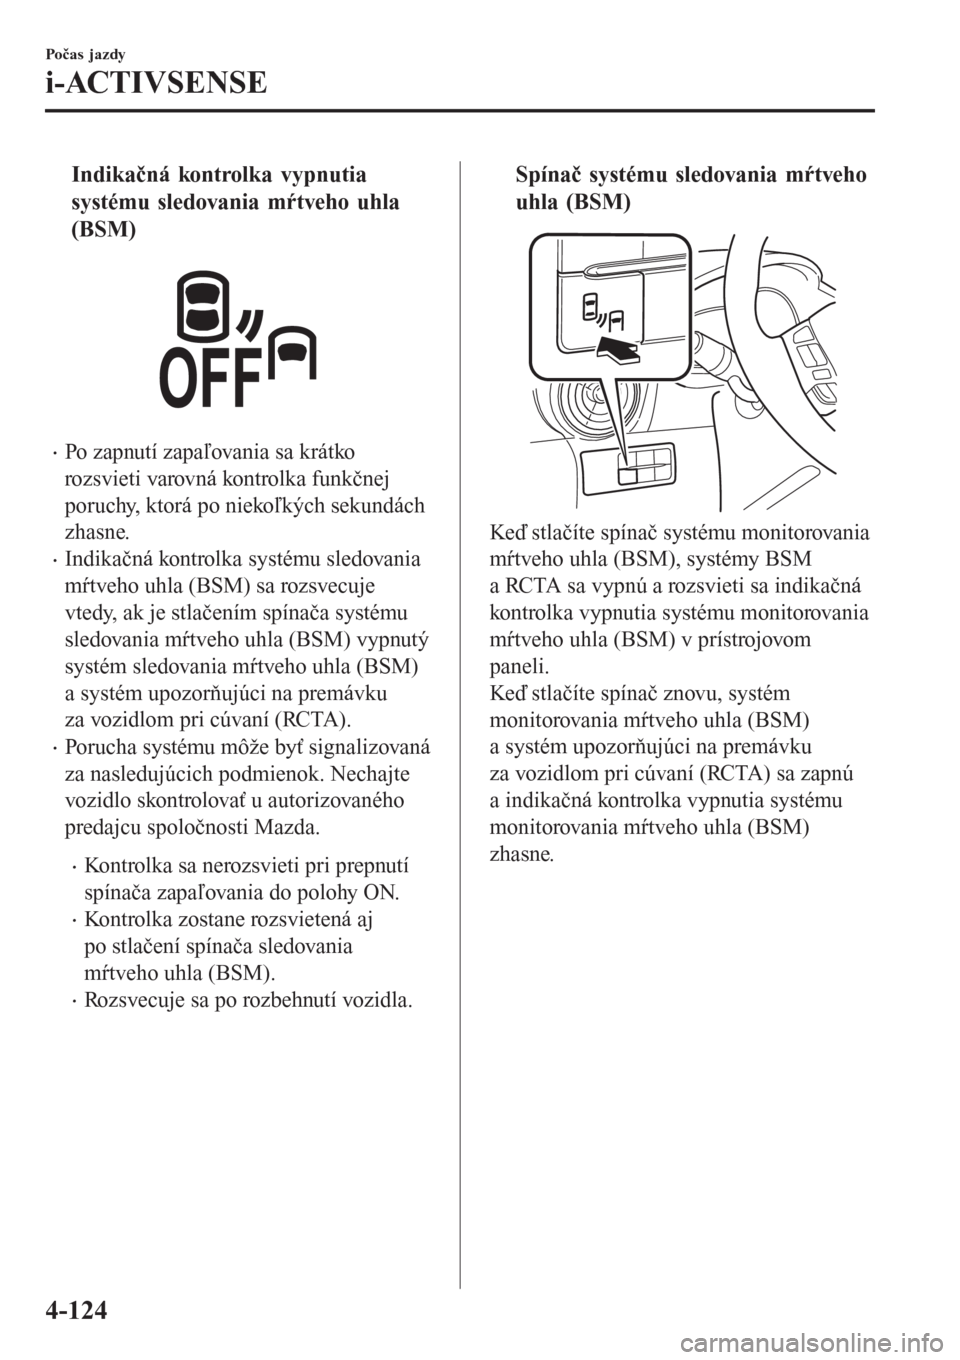 MAZDA MODEL CX-3 2015  Užívateľská príručka (in Slovak) tIndikačná kontrolka vypnutia
systému sledovania mŕtveho uhla
(BSM)
•Po zapnutí zapaľovania sa krátko
rozsvieti varovná kontrolka funkčnej
poruchy, ktorá po niekoľkých sekundách
zhasne.